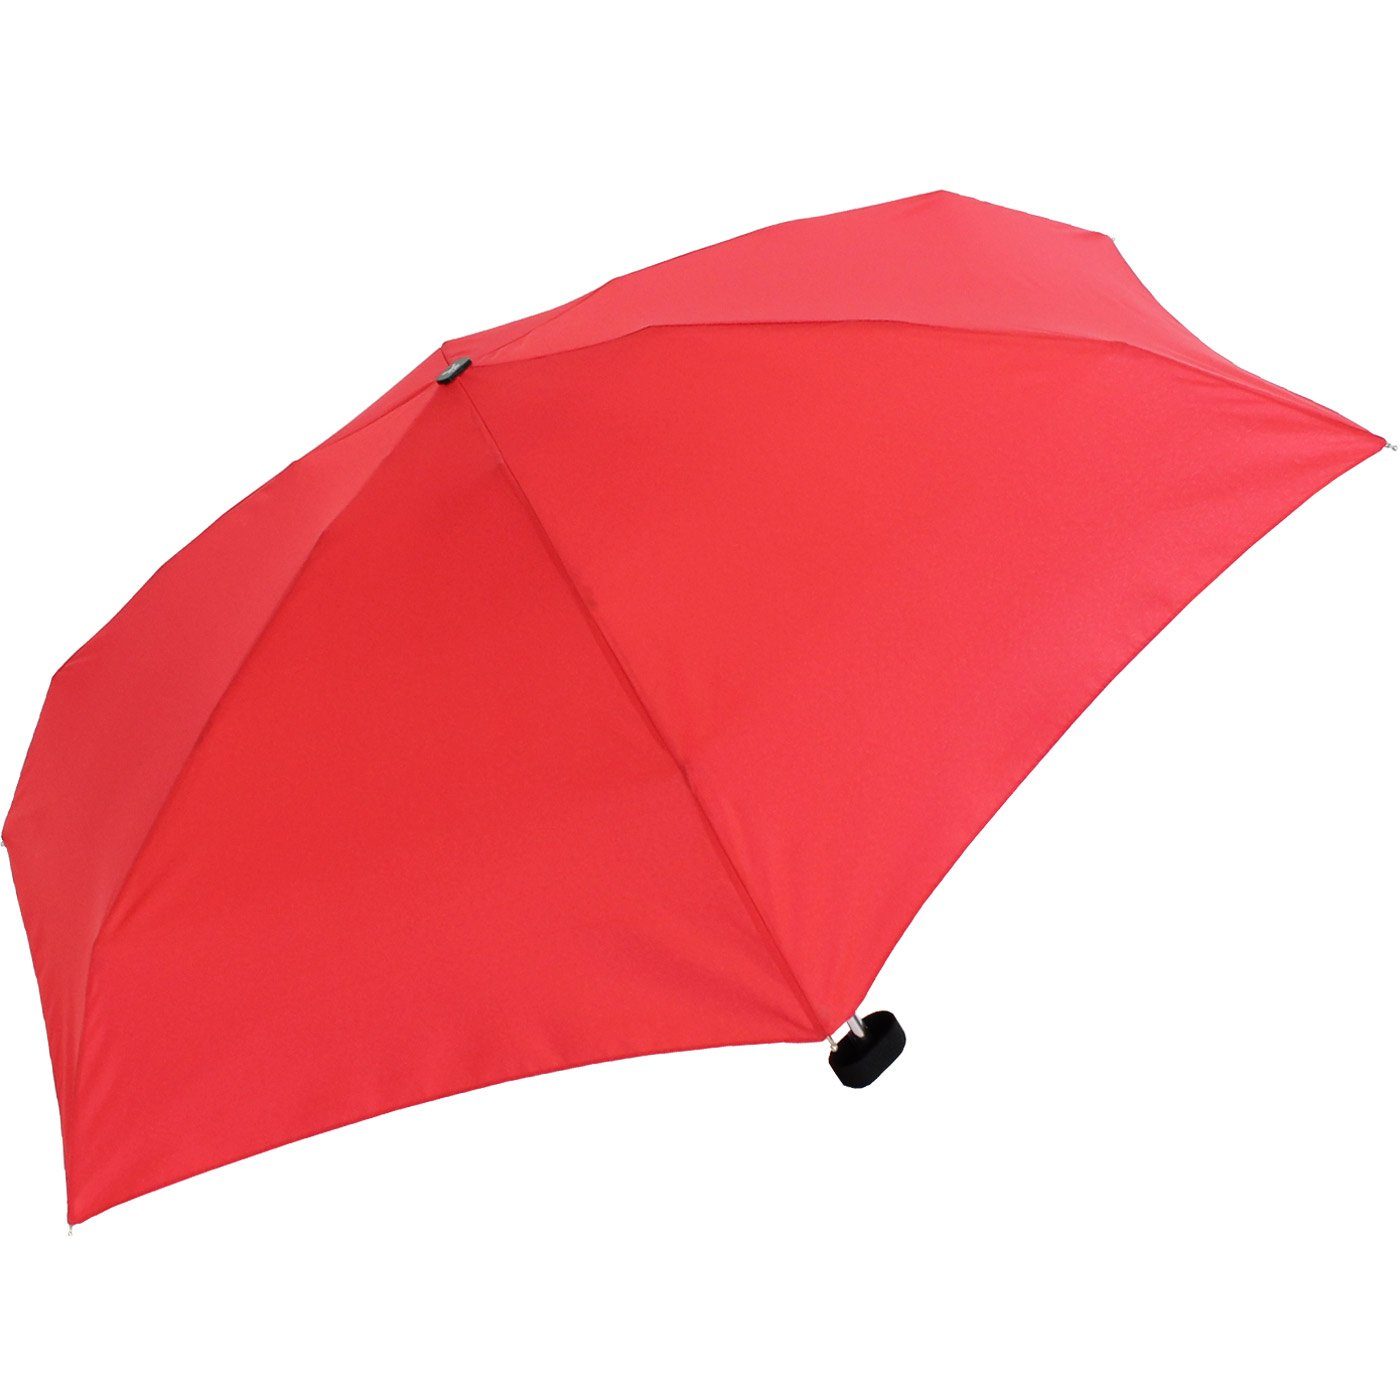 Taschenregenschirm Etui, winziger Regenschirm klein - iX-brella Super-Mini-Schirm im